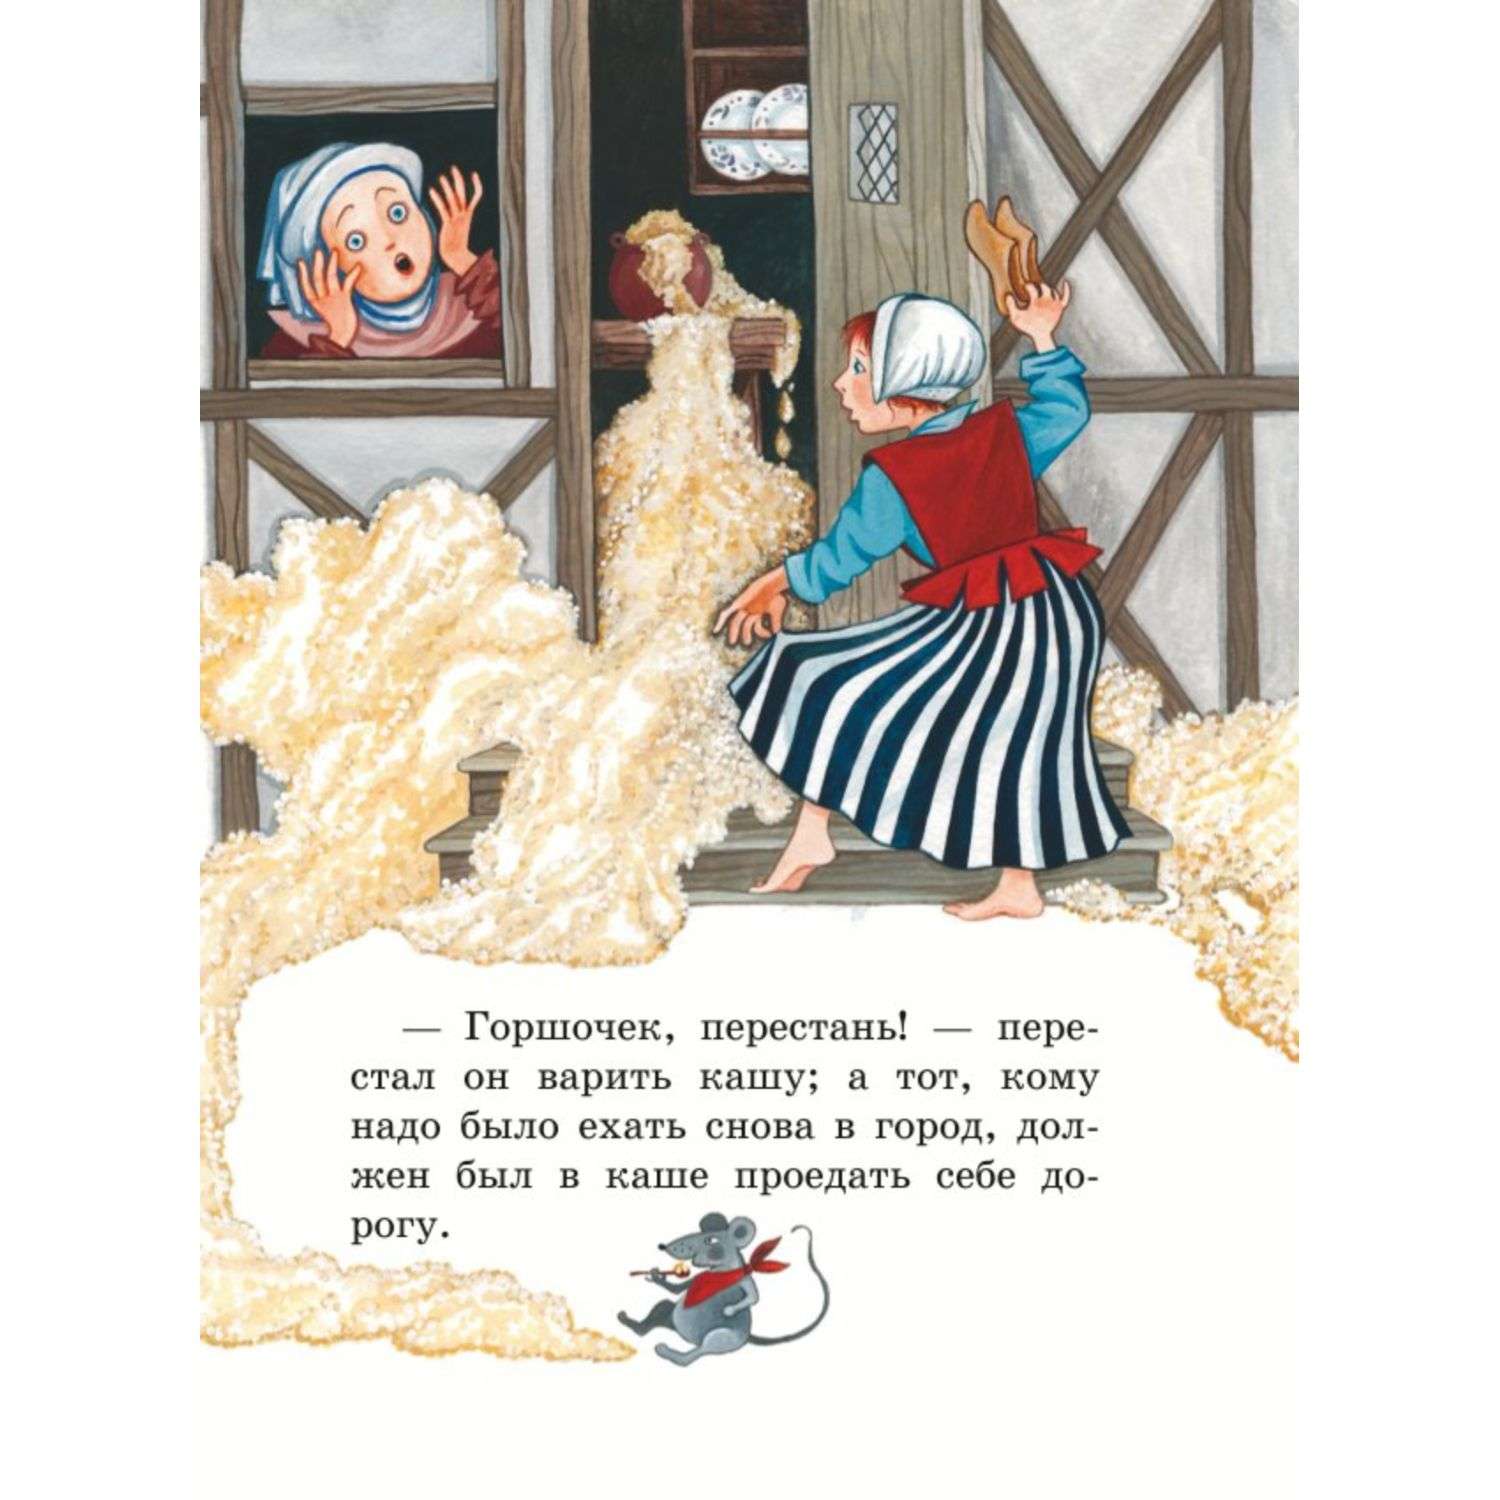 Книга Белоснежка и другие сказки иллюстрации Устиновой Юлии - фото 5